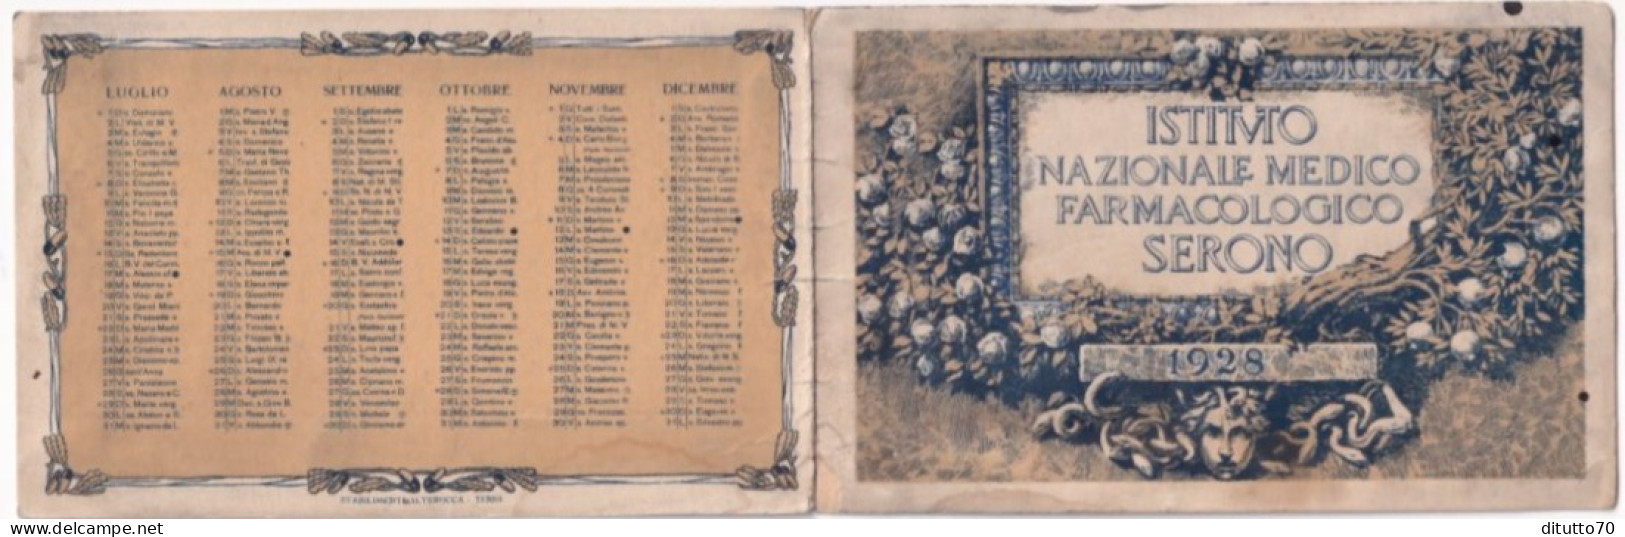 Calendarietto - Istituto Nazionale Medico Farmacologico Serono - Anno 1928 - Formato Piccolo : 1921-40